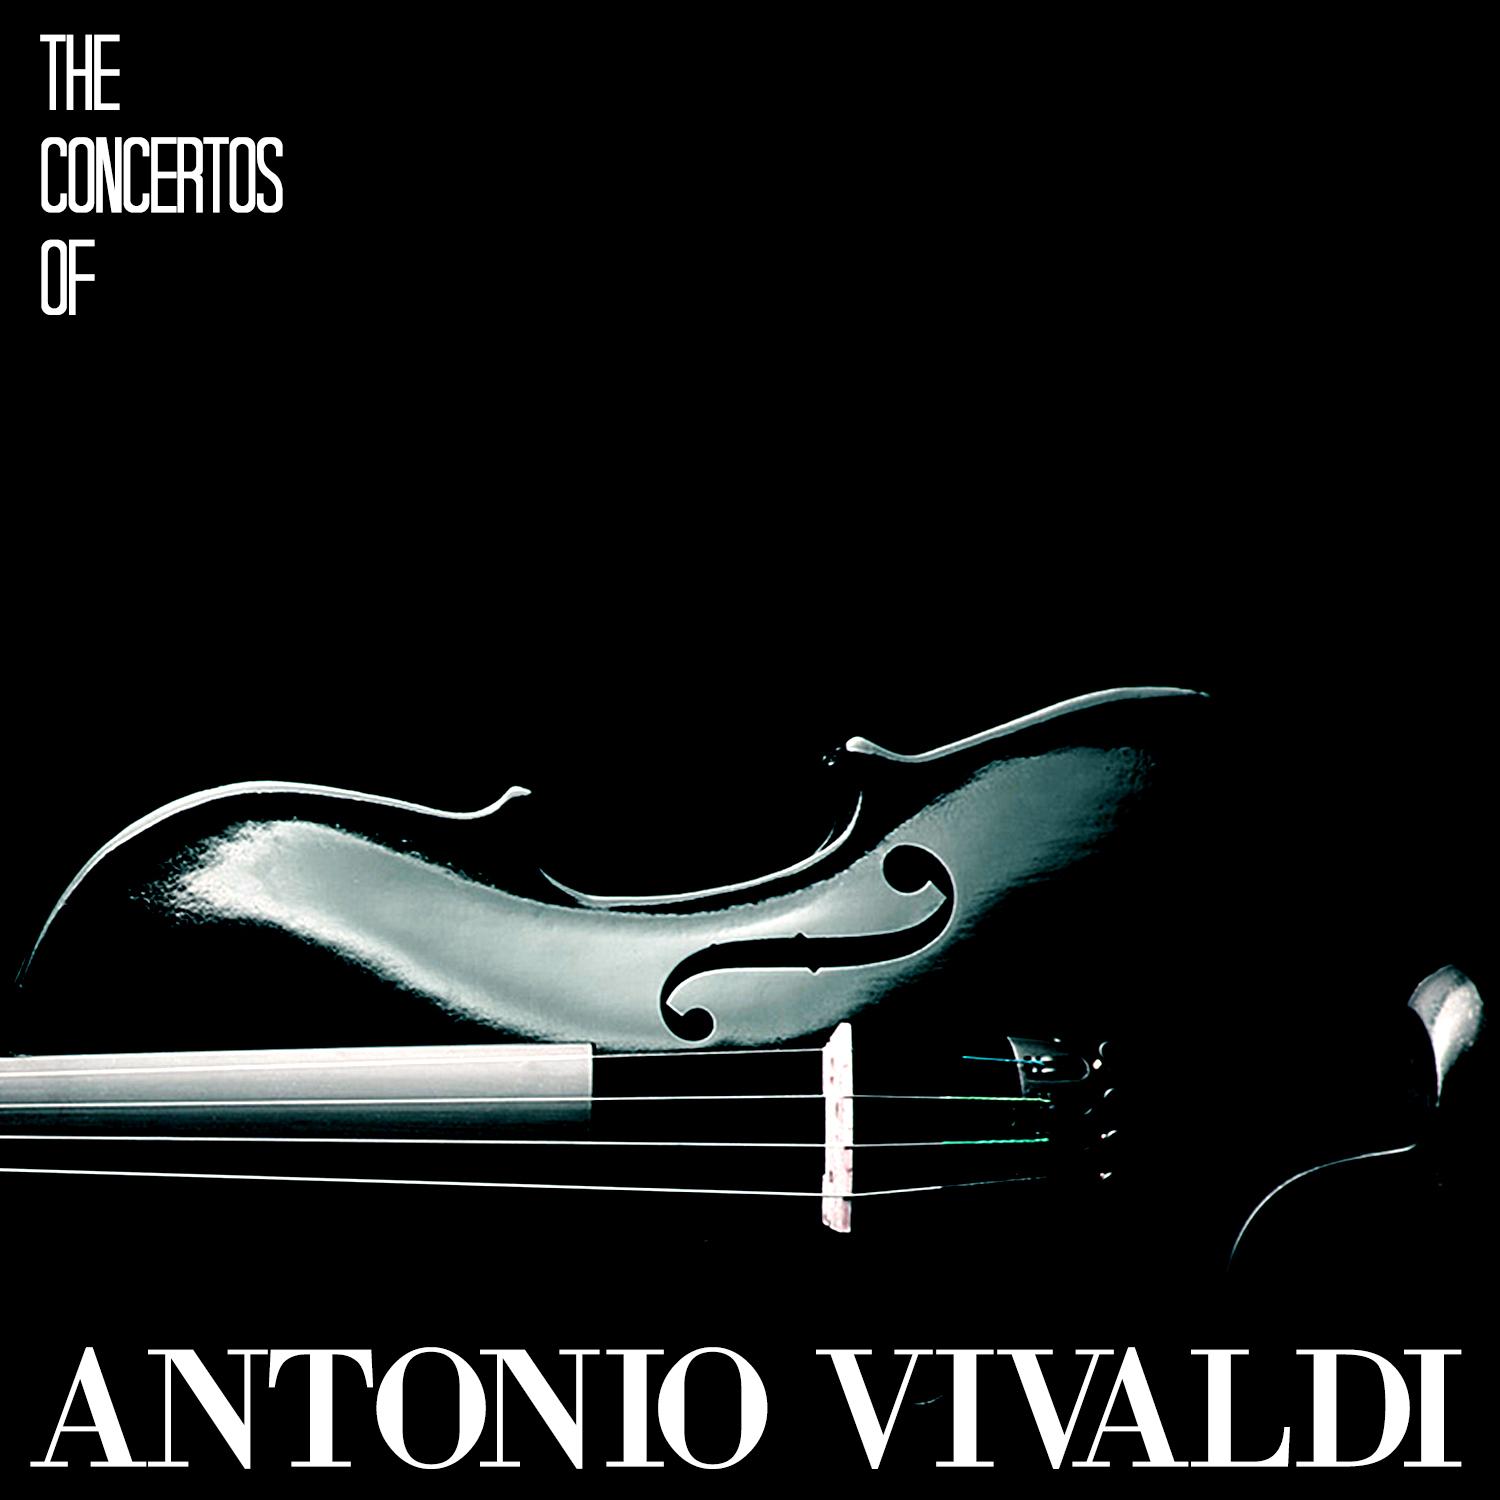 The Concertos of Antonio Vivaldi